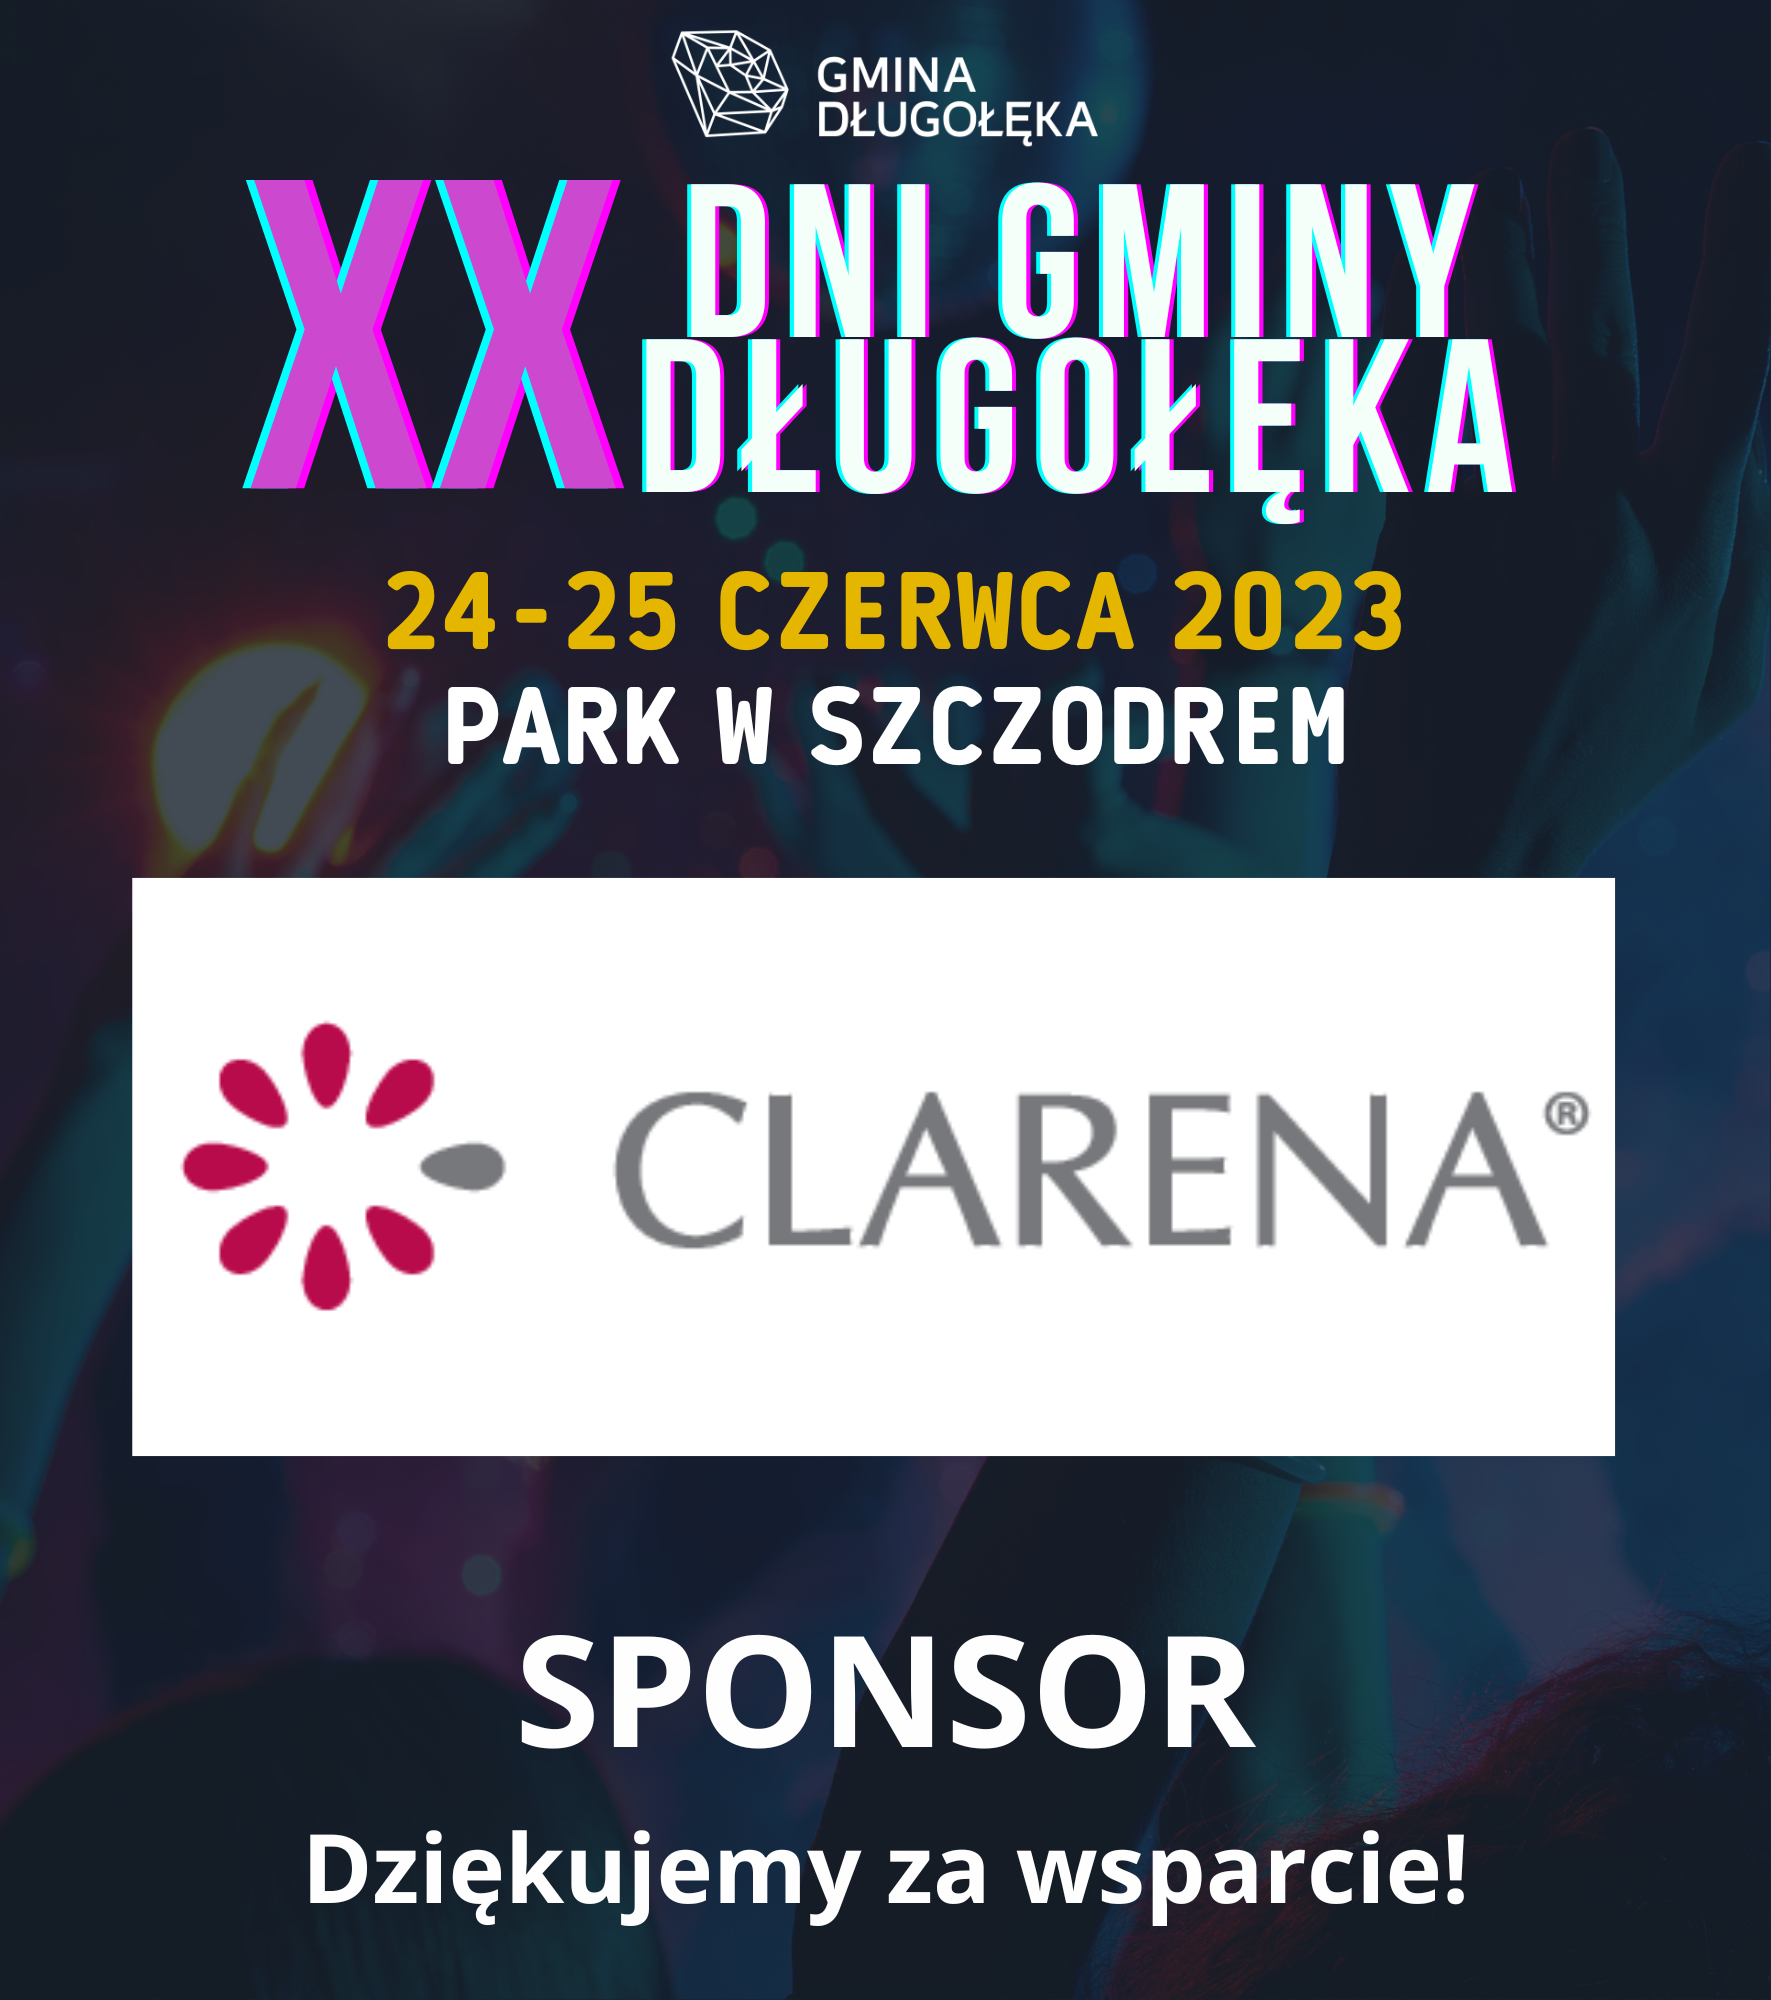 Clarena sponsorem XX Dni Gminy Długołęka